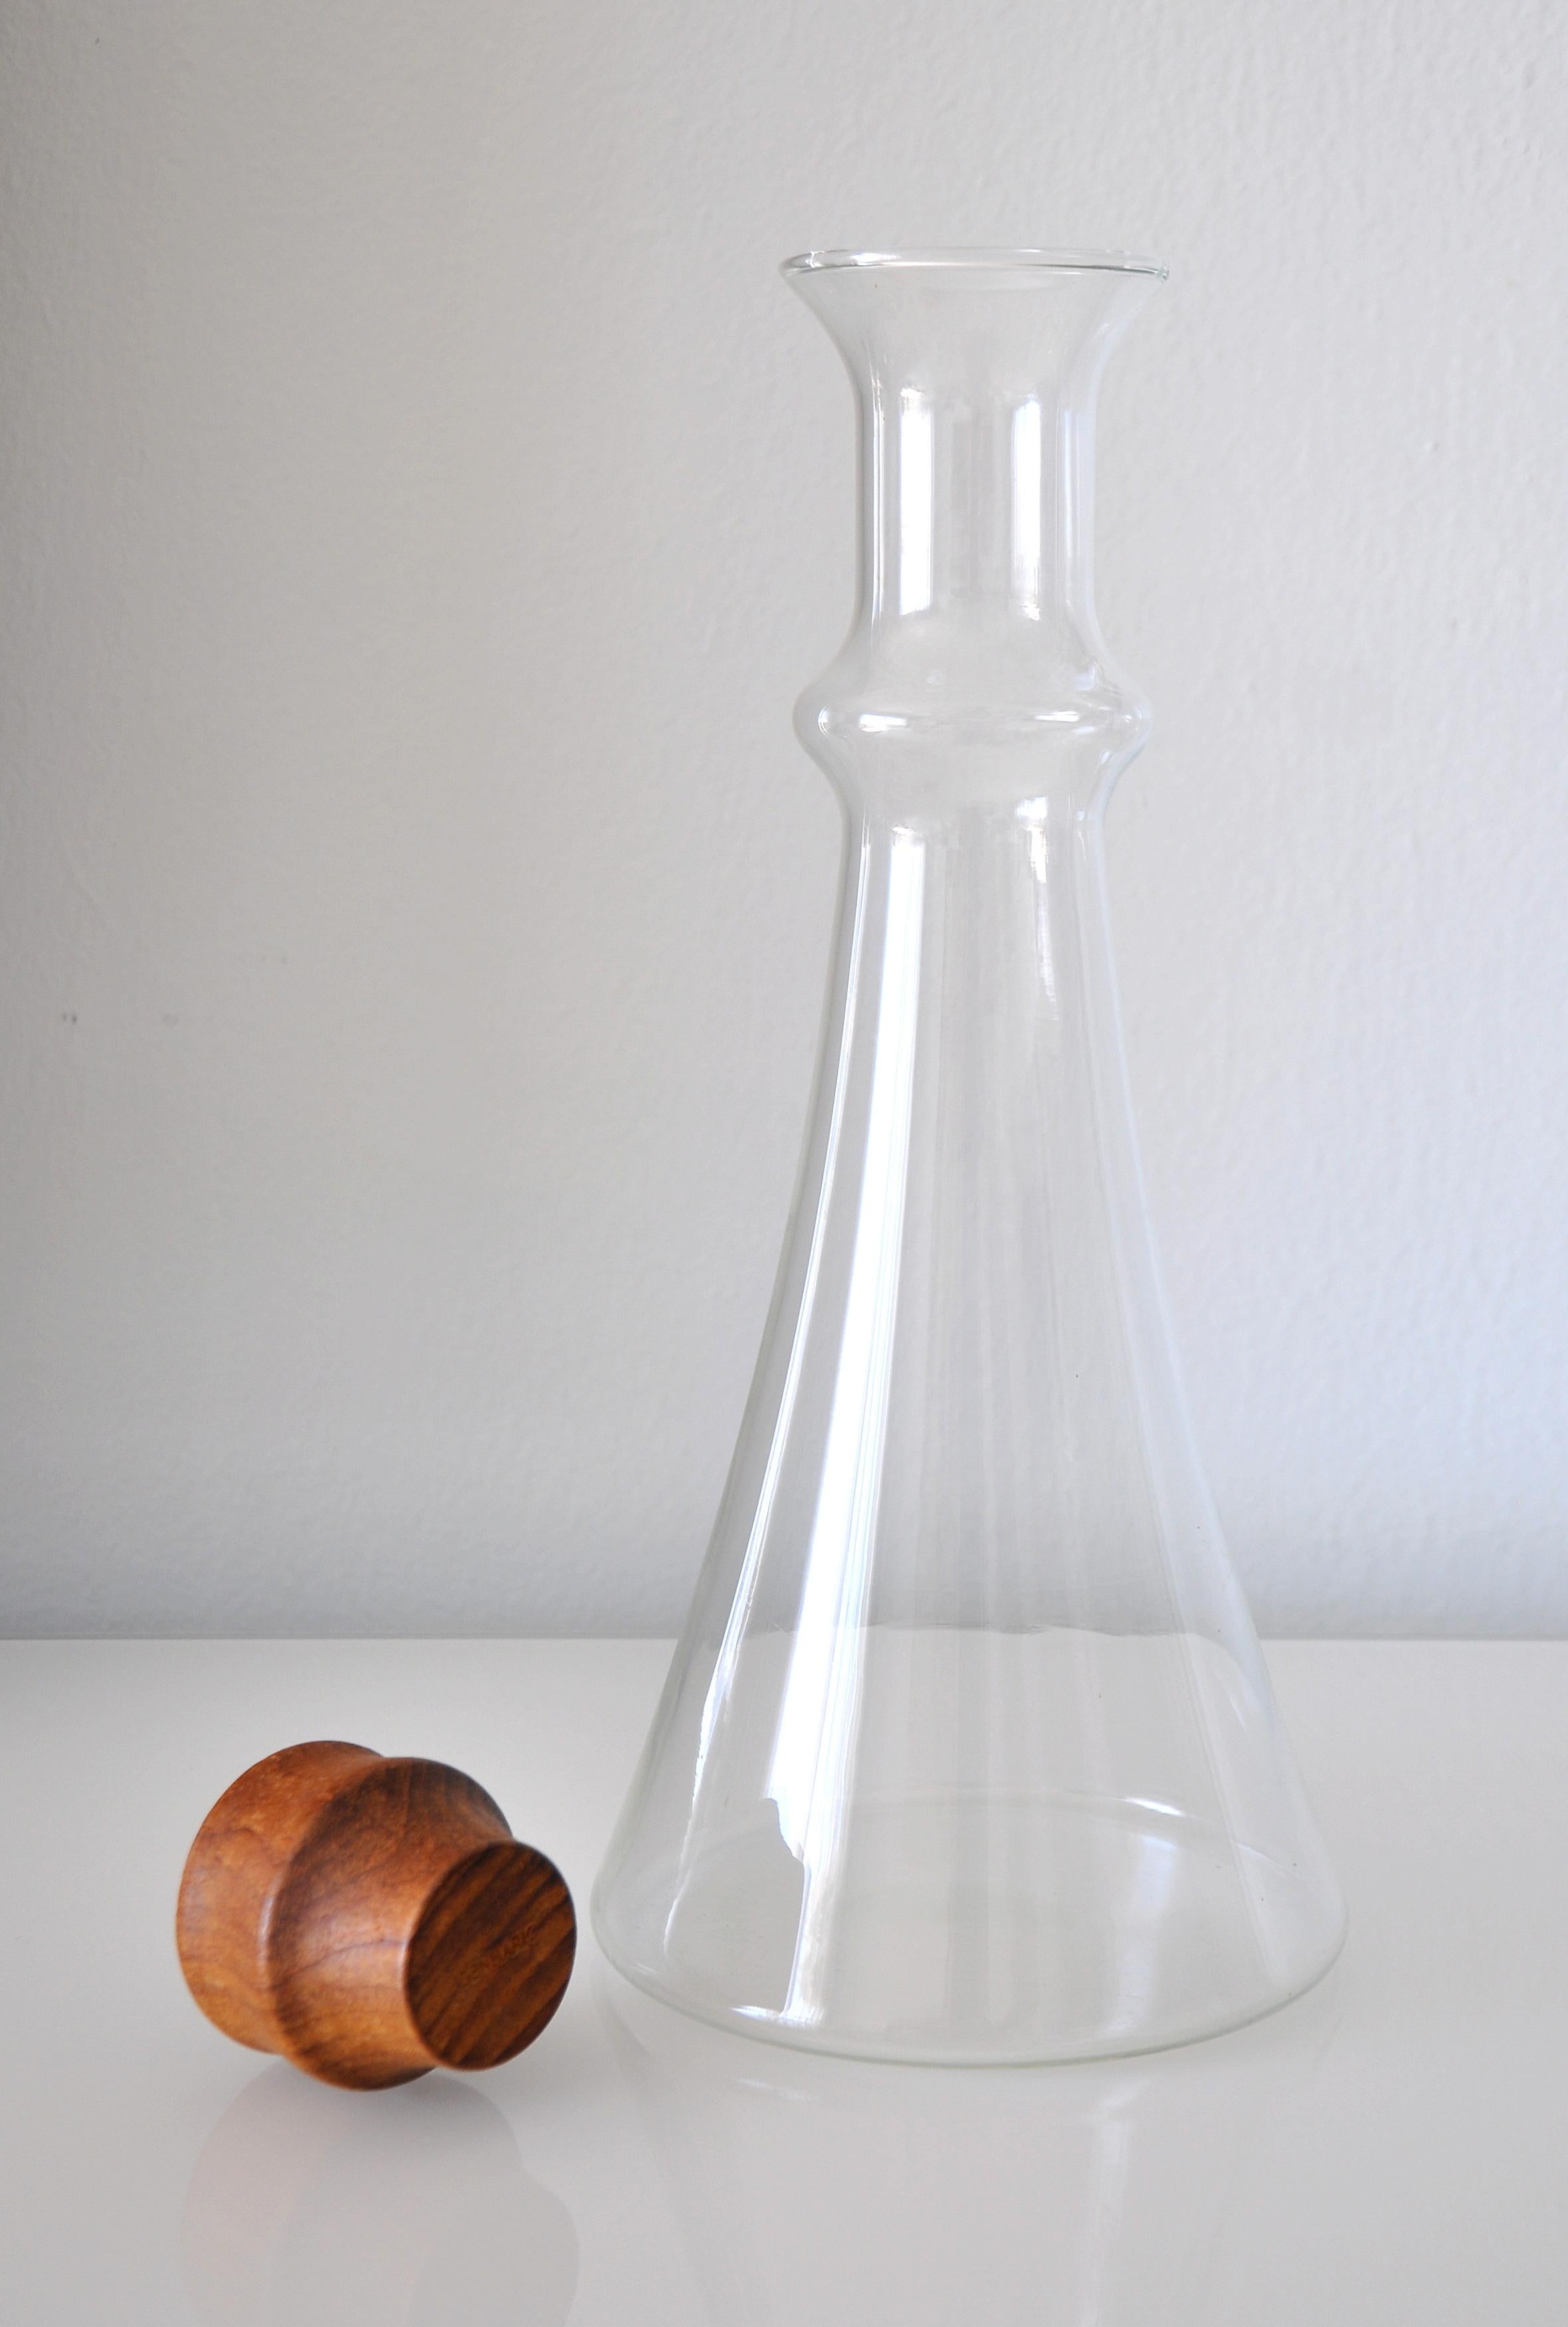 Hergestellt in Dänemark. Vintage-Glaskaraffe, entworfen von Gunnar Cyrén, um 1980. Der hohe, becherförmige Krug mit dem geschnitzten Teakholzstopfen ist die stilvolle Art, Wein oder Wasser zu servieren. Die Karaffe fasst 1,5 Liter.